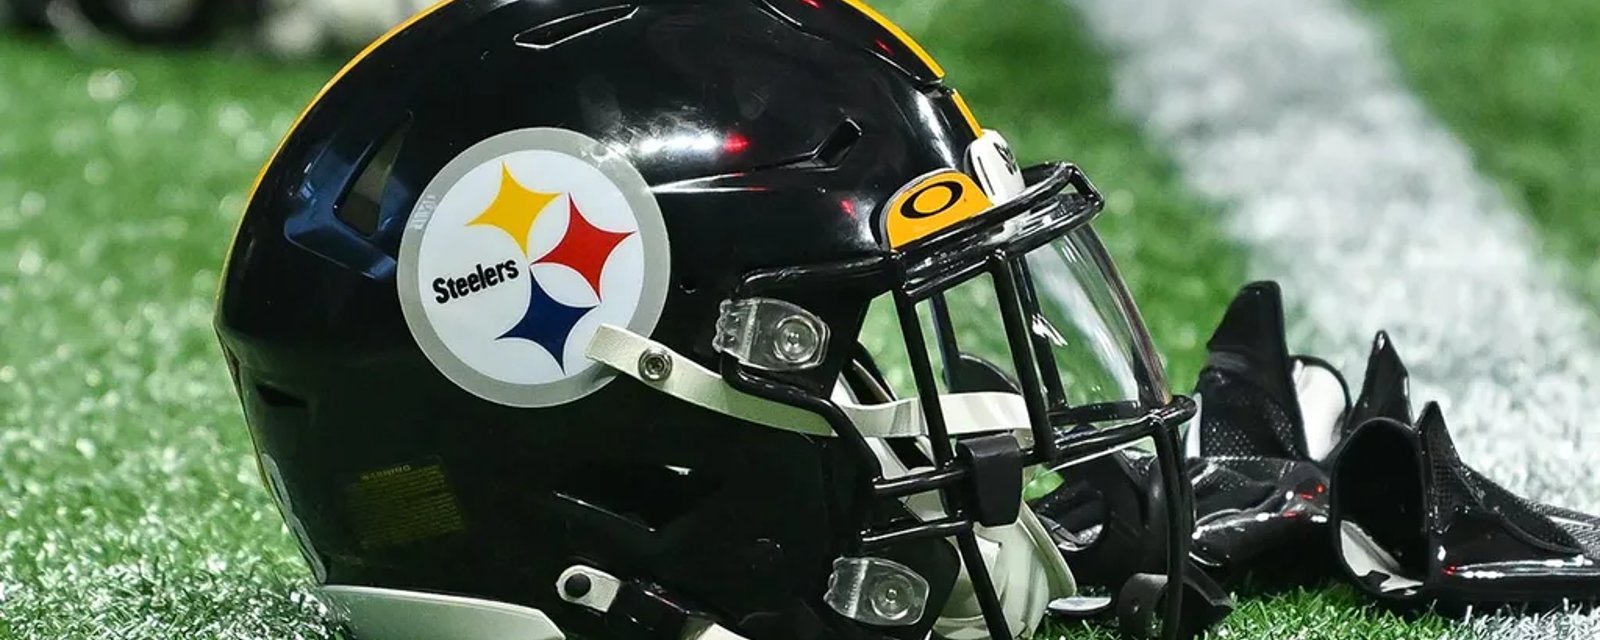 Report: Steelers preparing for major trade 